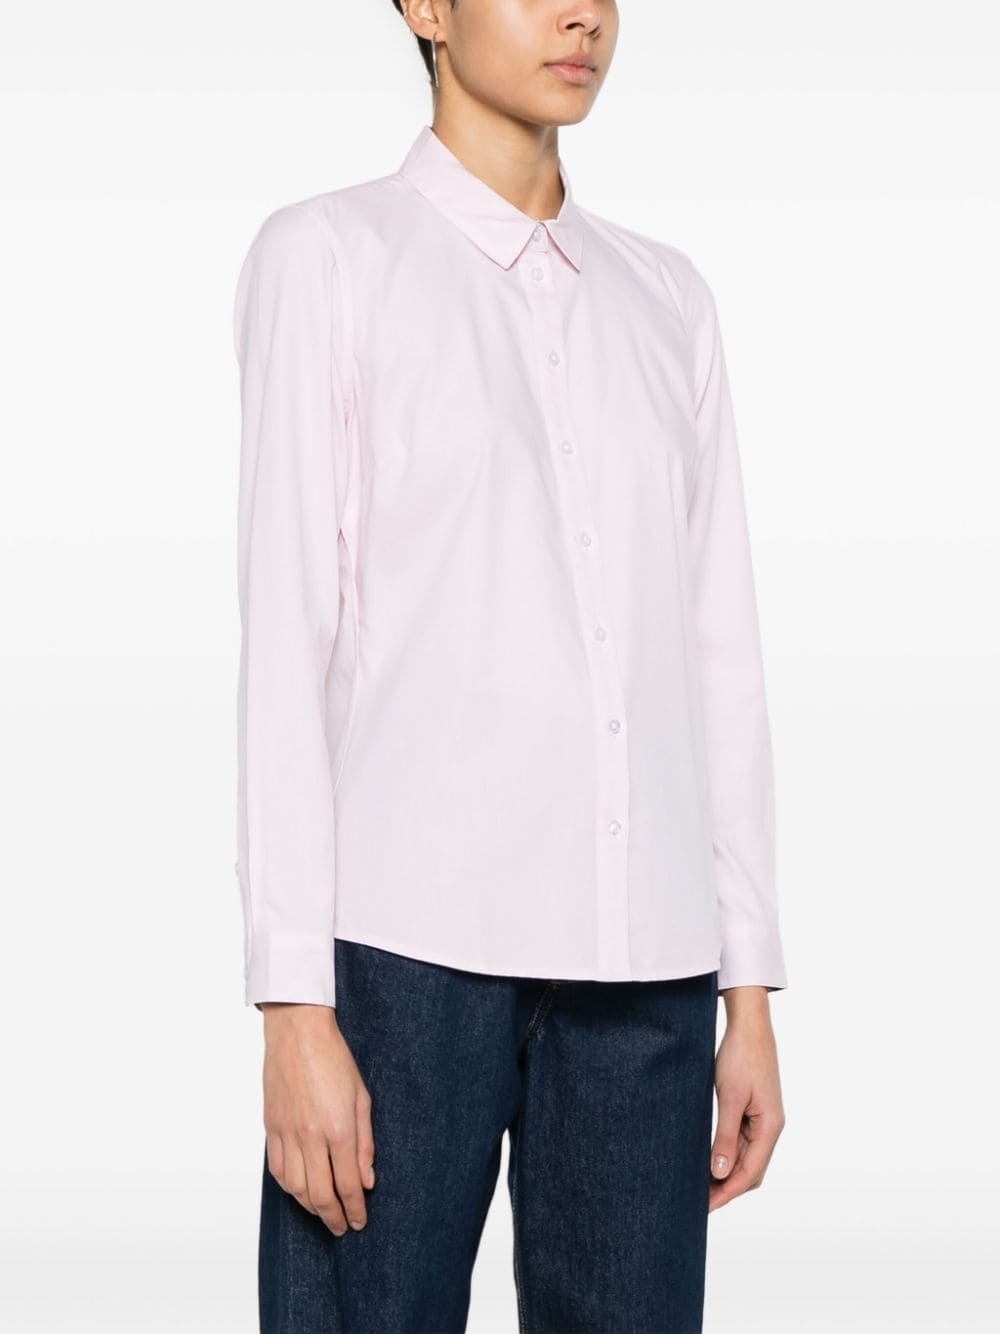 Derwent cotton shirt - 3